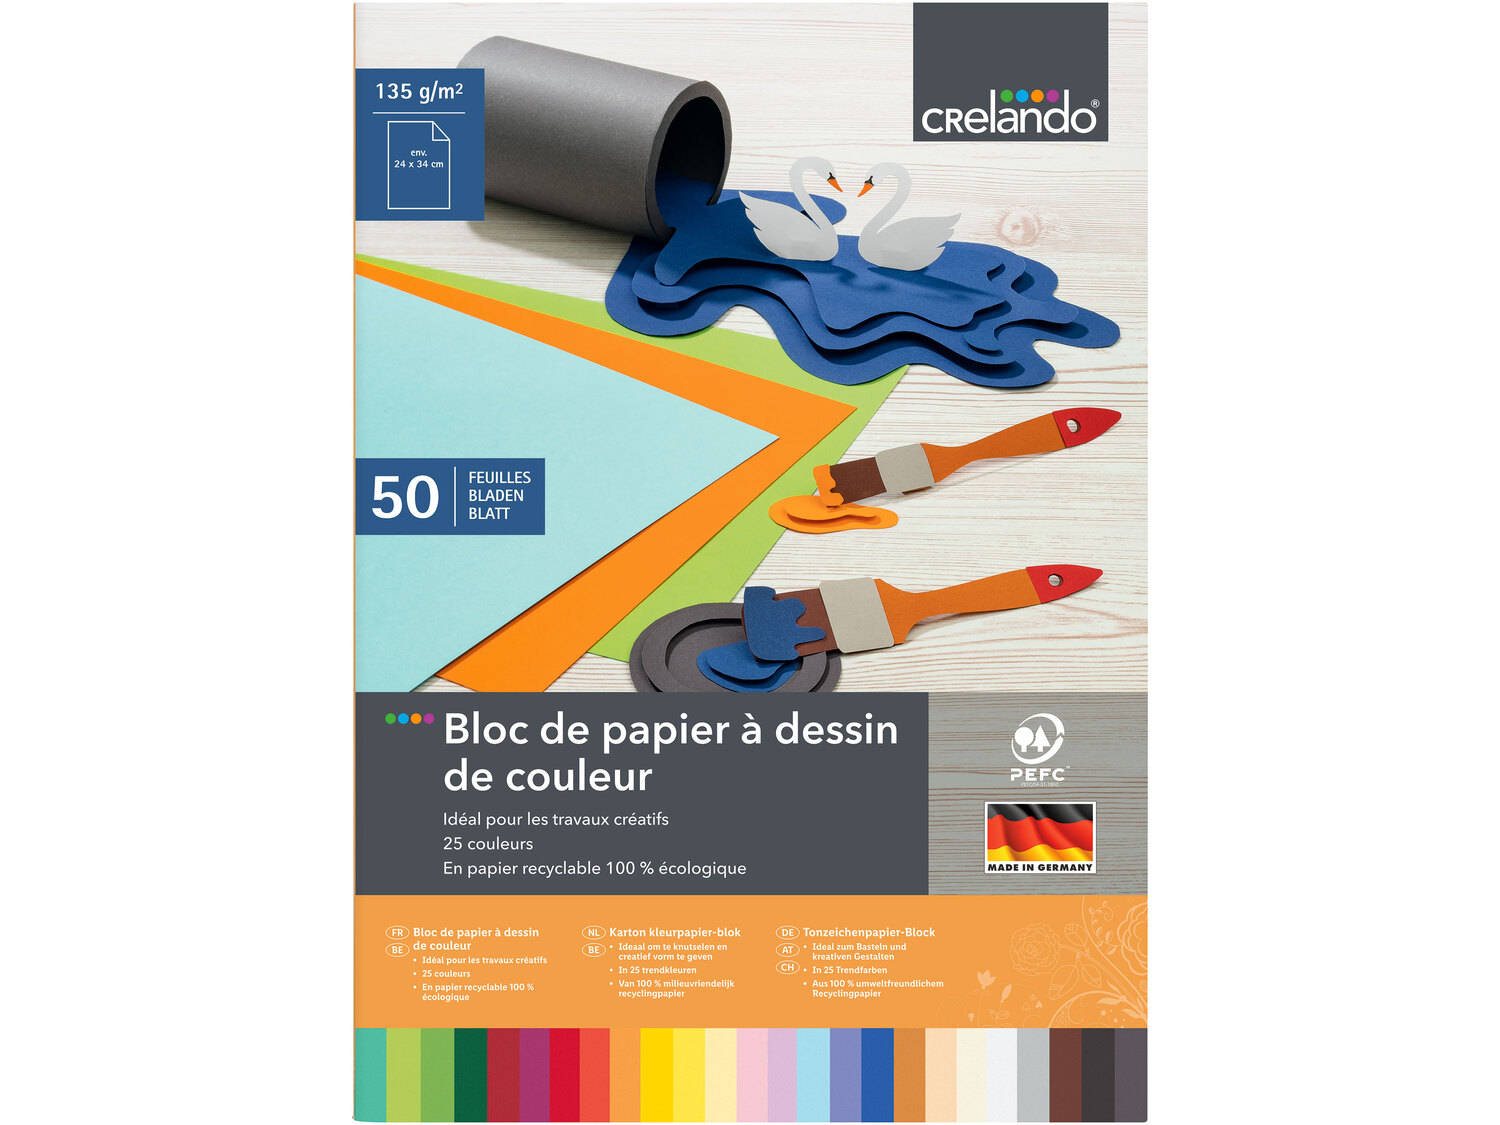 Bloc de carton ou papier de couleur , le prix 1.99 € 
Au choix : 
- Maxi-bloc ...